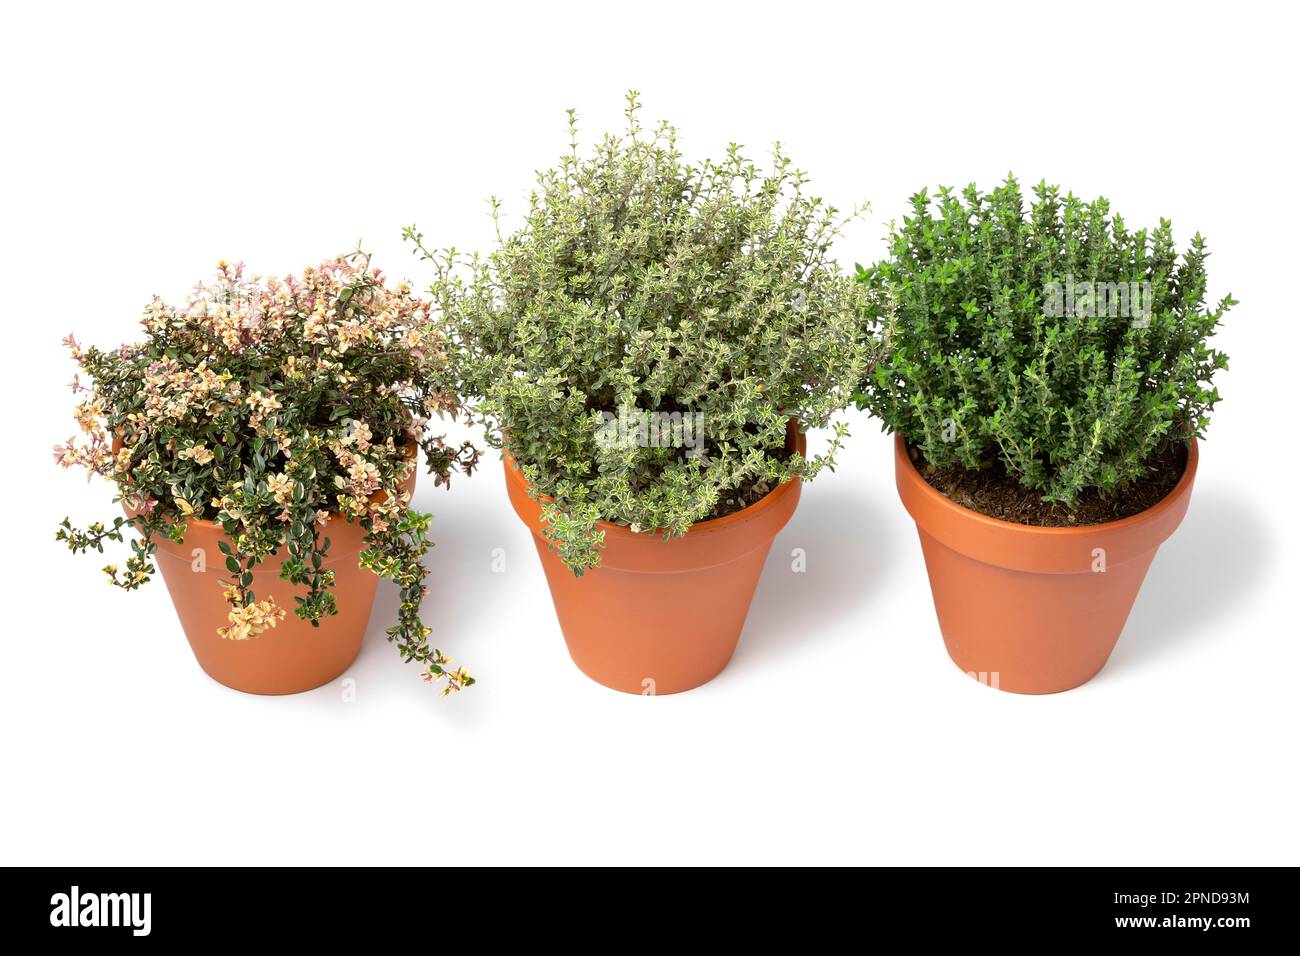 Pentole in ceramica con una variazione di diverse piante di timo fresco isolate su fondo bianco Foto Stock